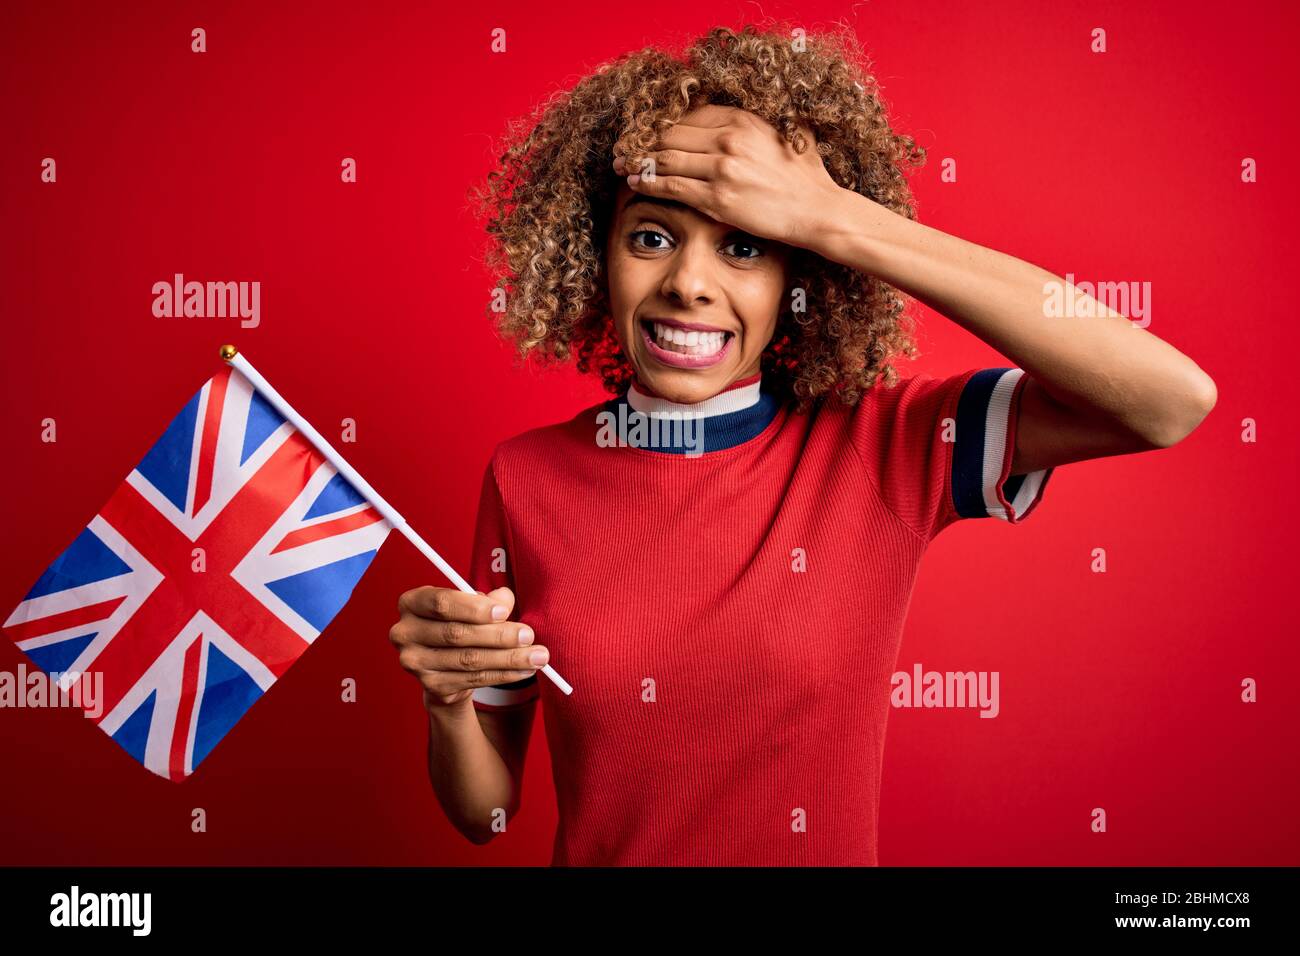 La giovane maledetta africana americana che tiene la bandiera del regno unito in occasione del referendum sulla brexit ha sottolineato con la mano sulla testa, scioccata dalla vergogna e dalla sorpresa faccia, ang Foto Stock